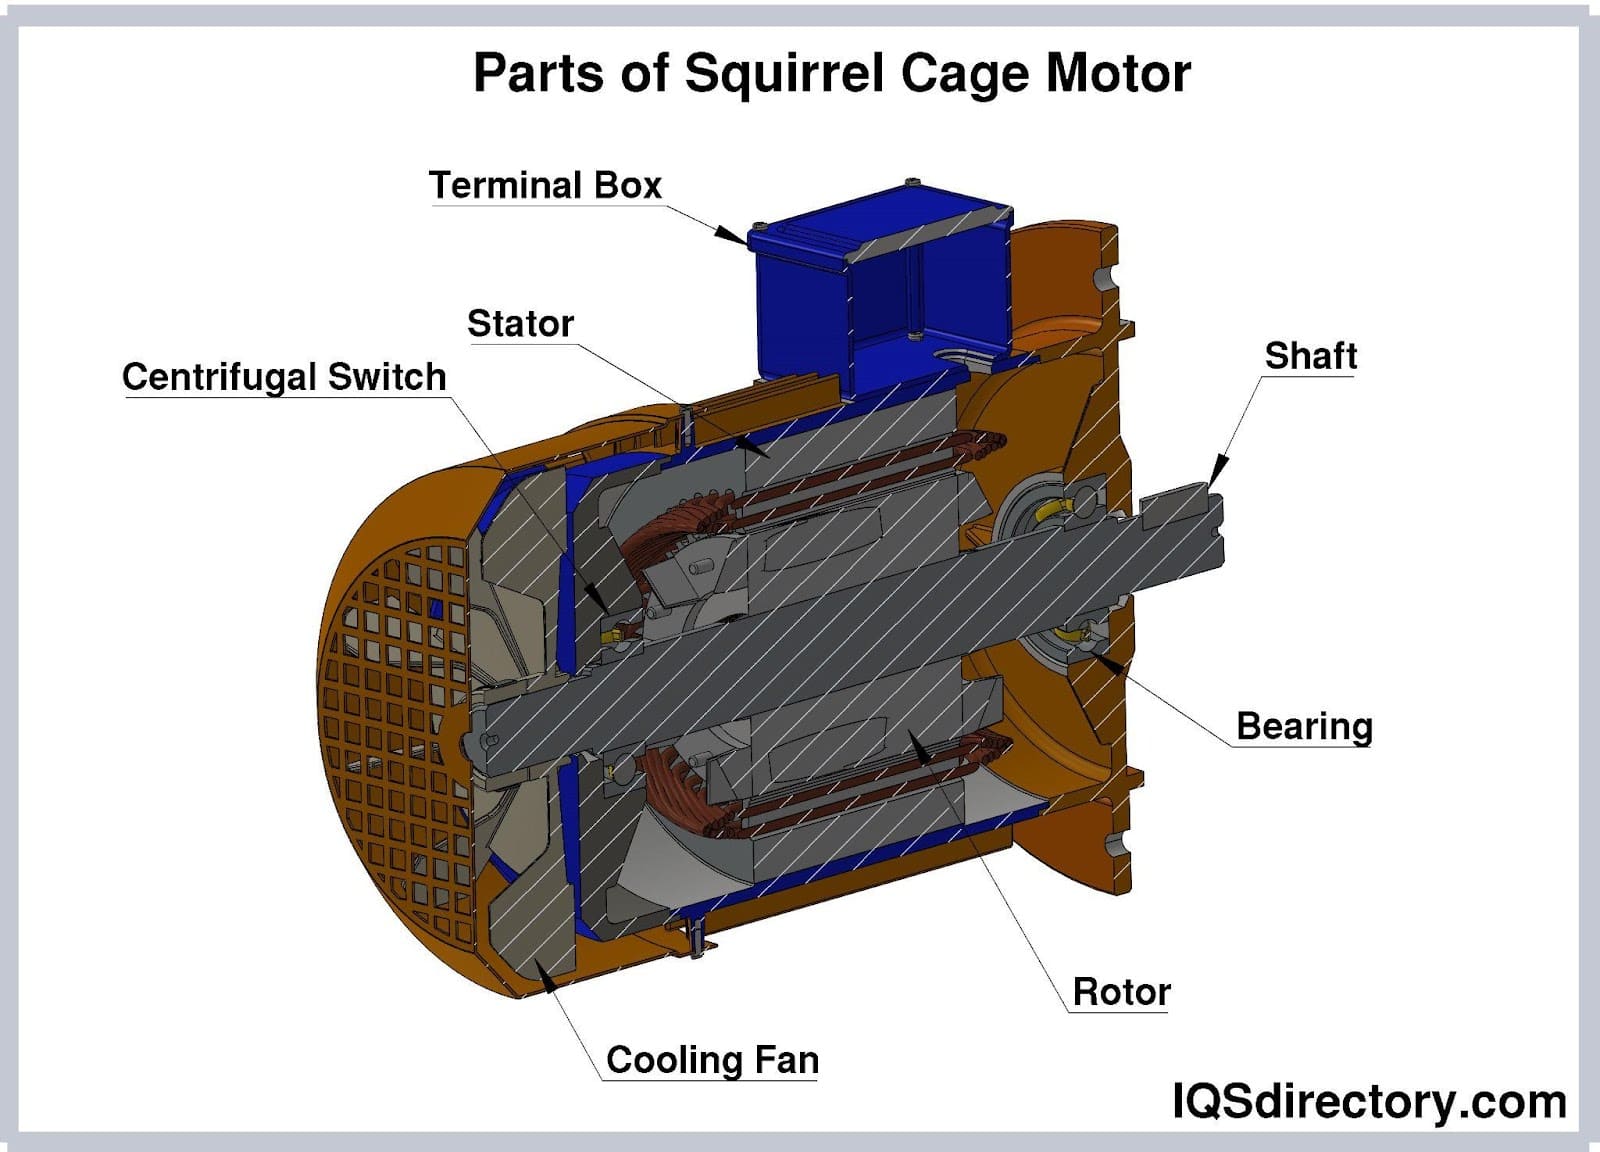 Parts of Squirrel Cage Motor